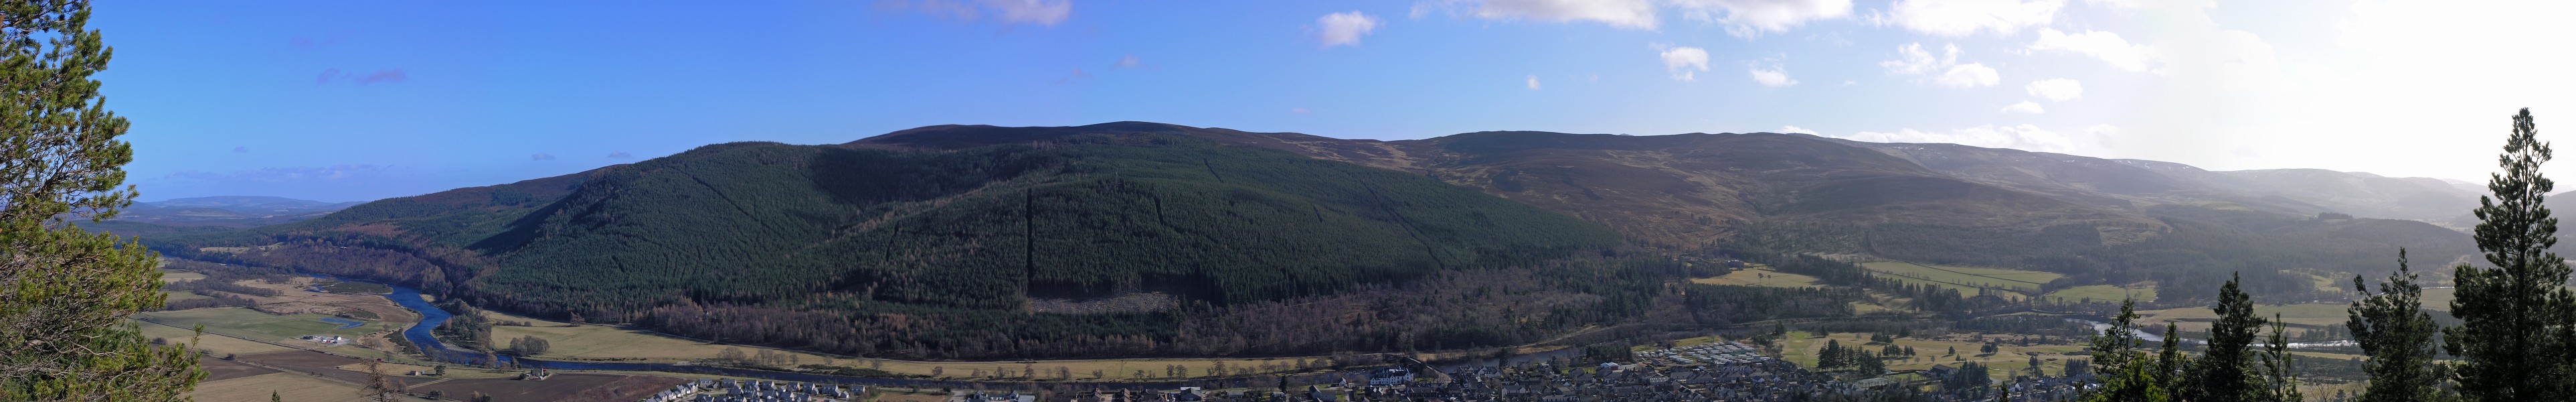 Craigendarroch Hill view